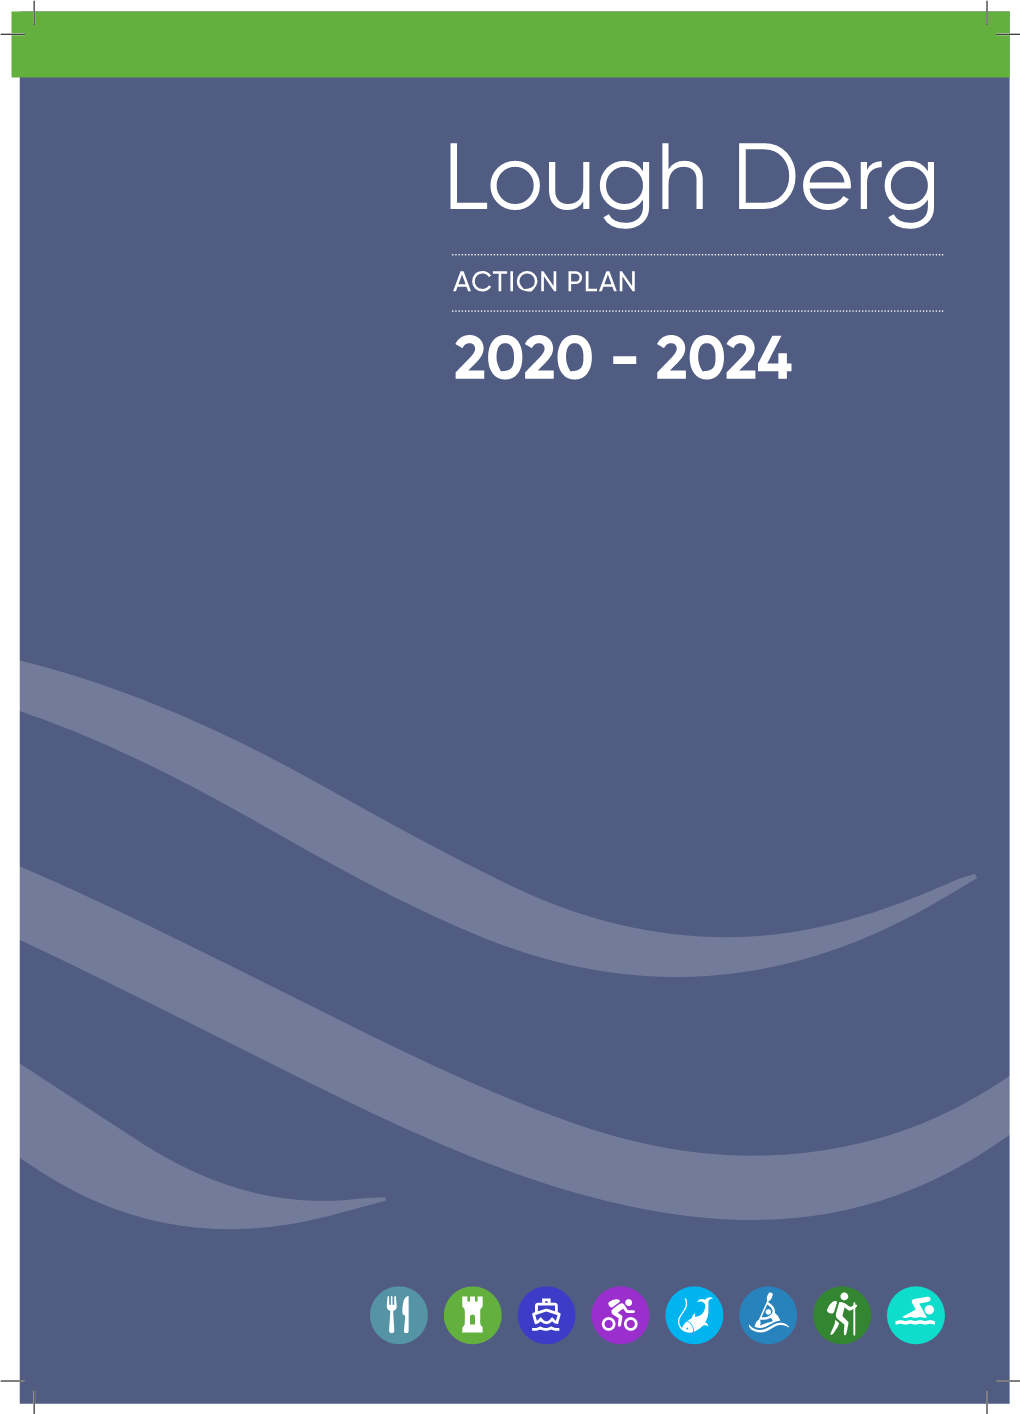 Action Plan 2020 - 2024